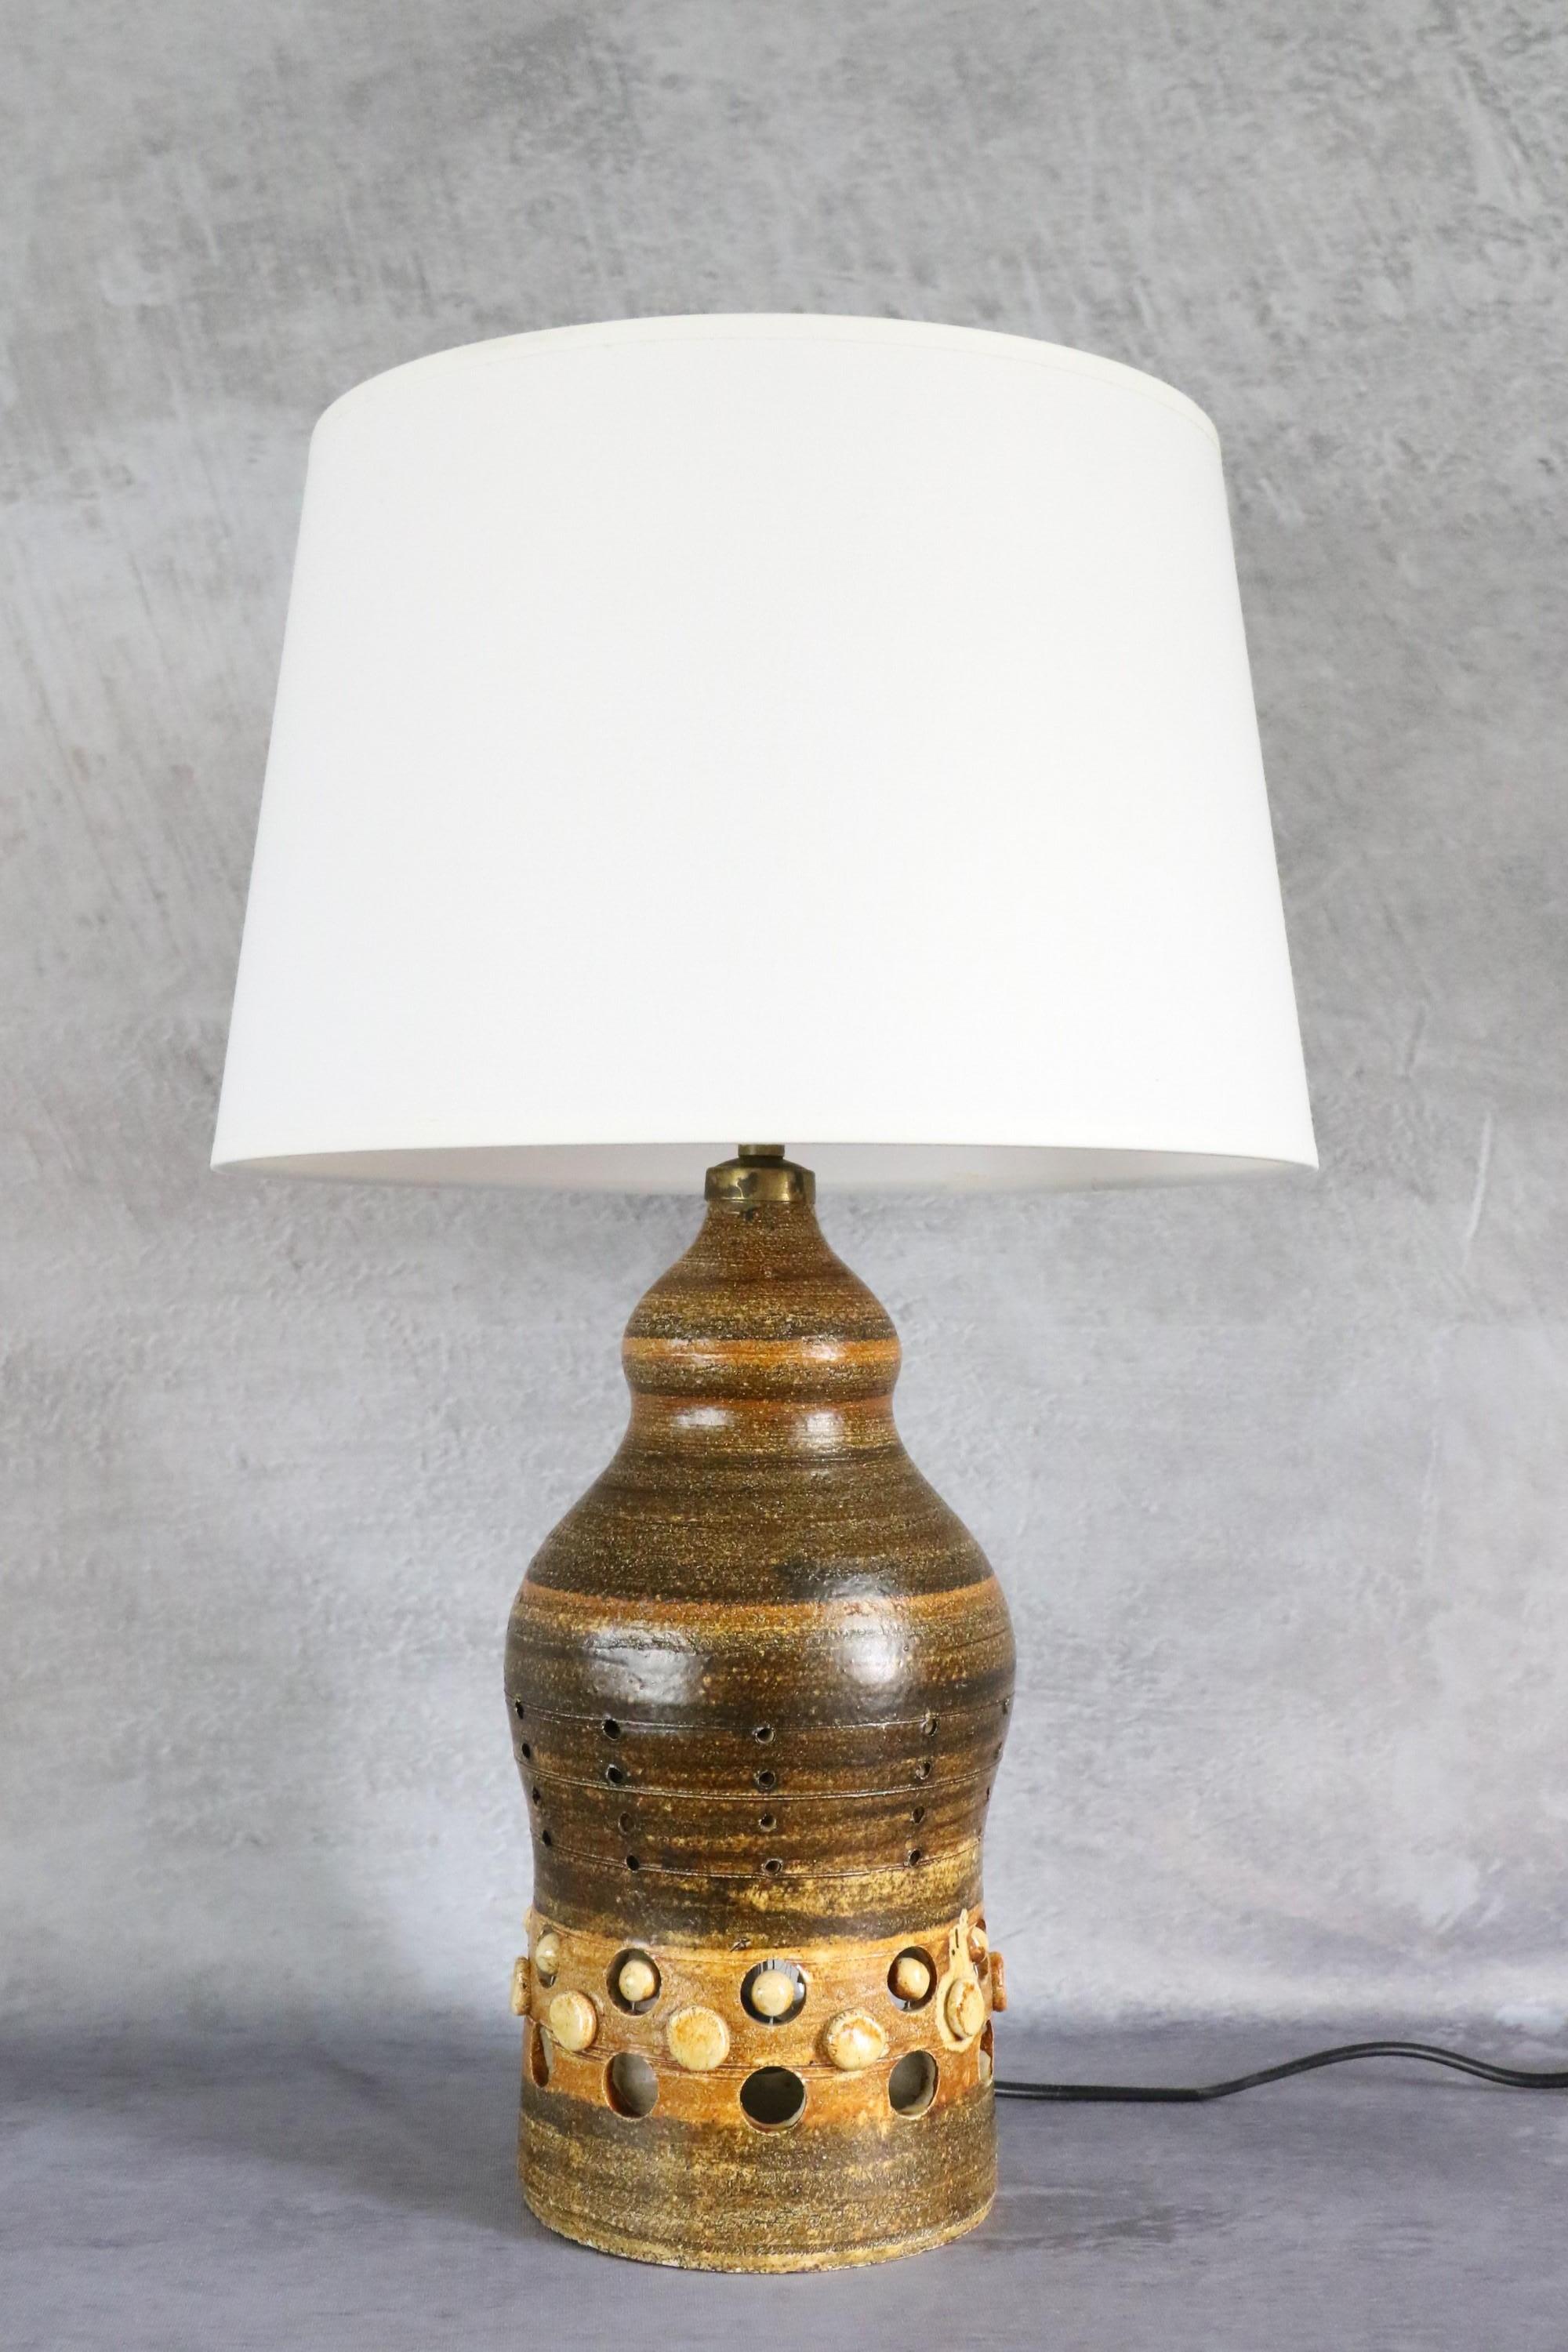 Lampe à double éclairage en céramique française de Georges Pelletier, années 1970.

C'est une belle lampe en céramique. Elle offre un double éclairage puisqu'une deuxième ampoule se trouve à l'intérieur de la base de la lampe. La lumière est très